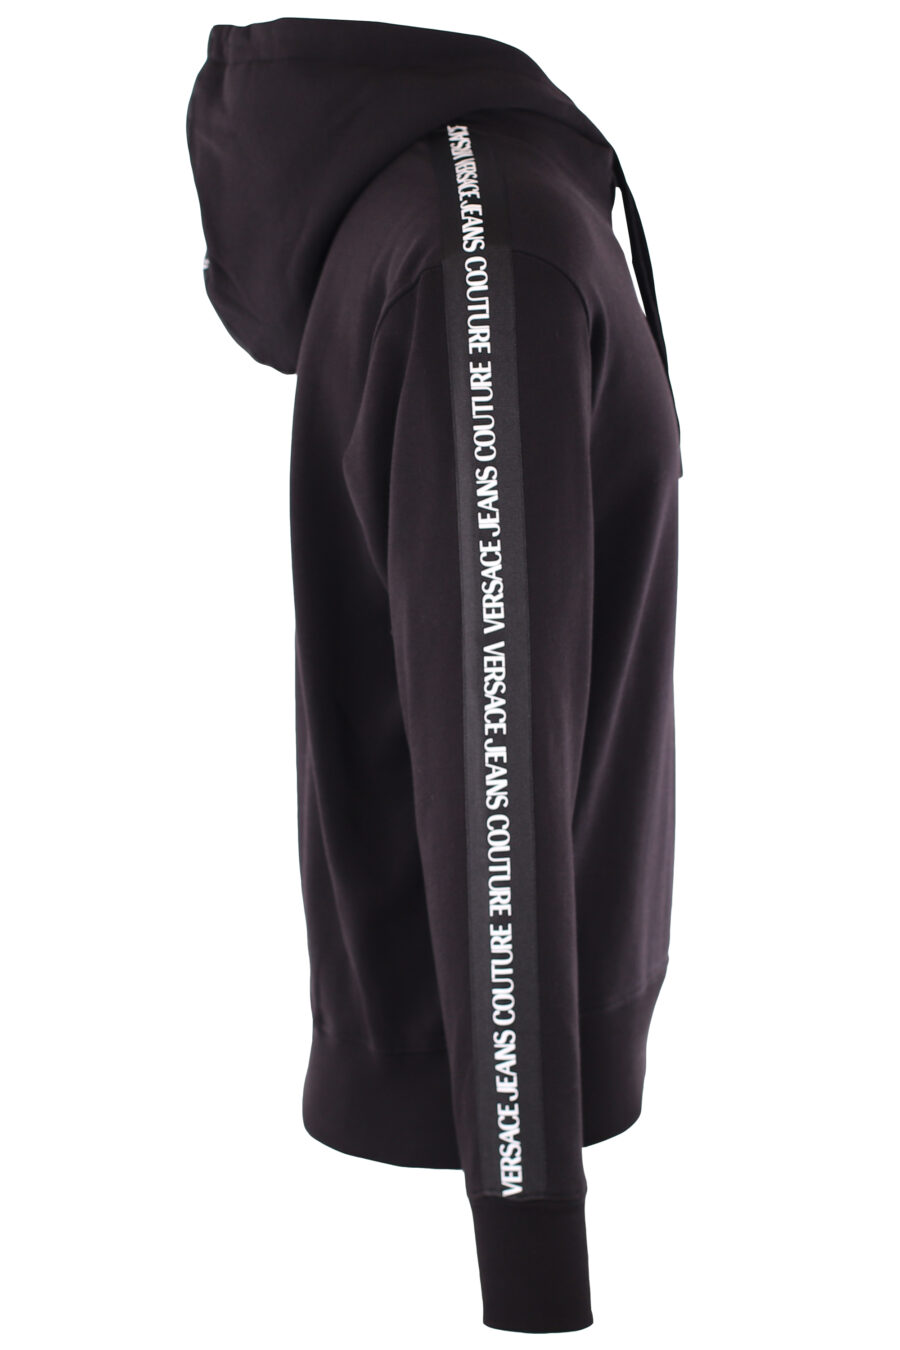 Sudadera con capucha negra y logo en cinta en mangas - IMG 6452